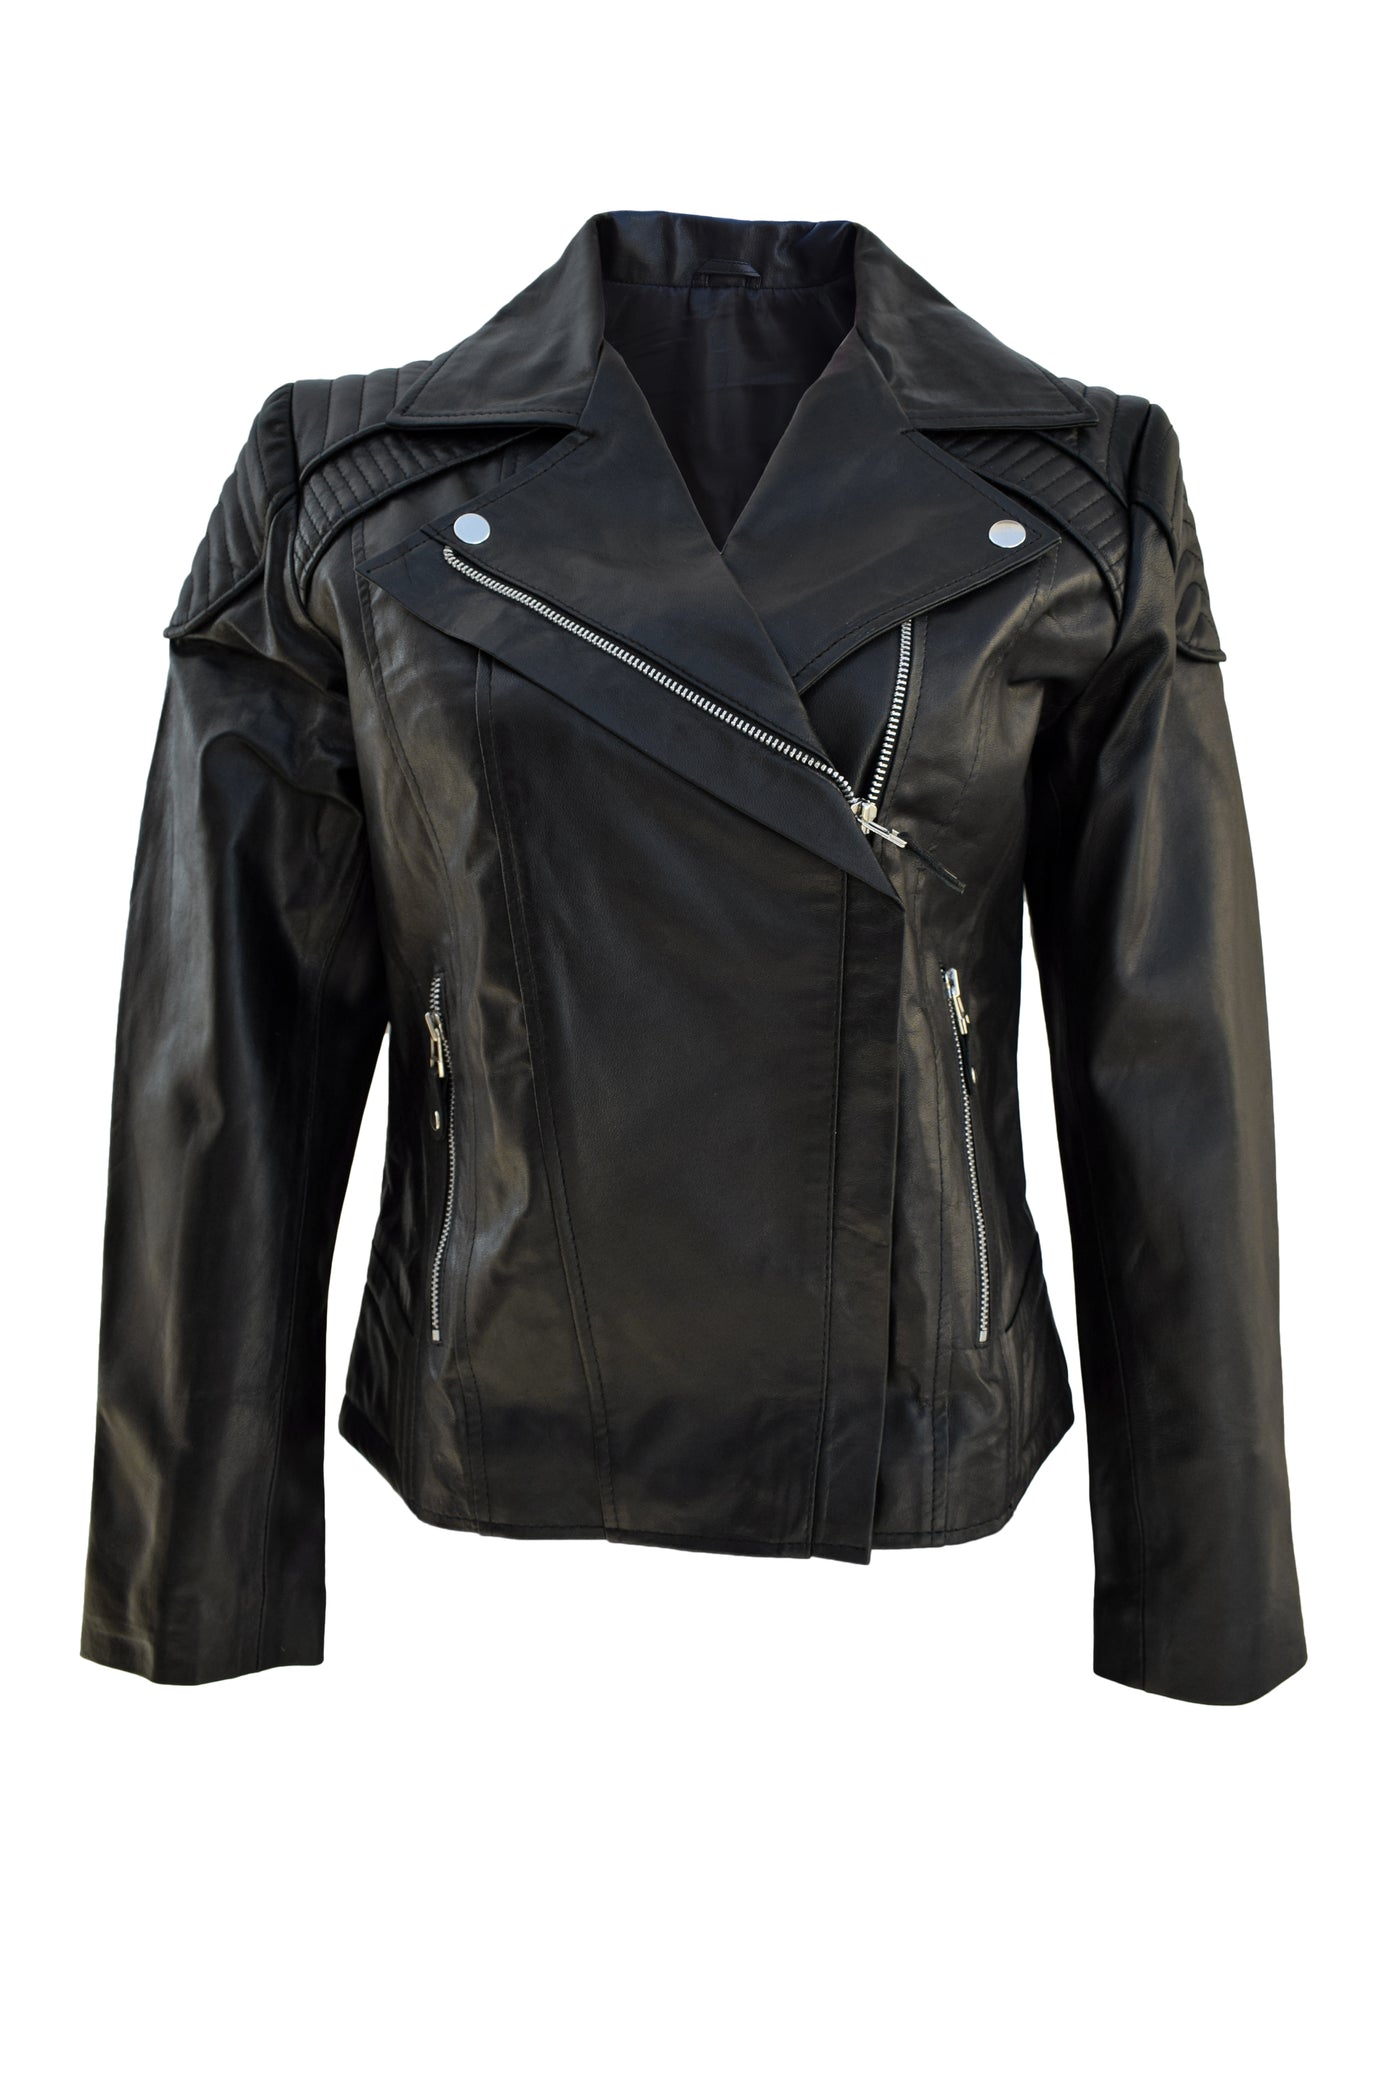 Black Superior Leather Jacket